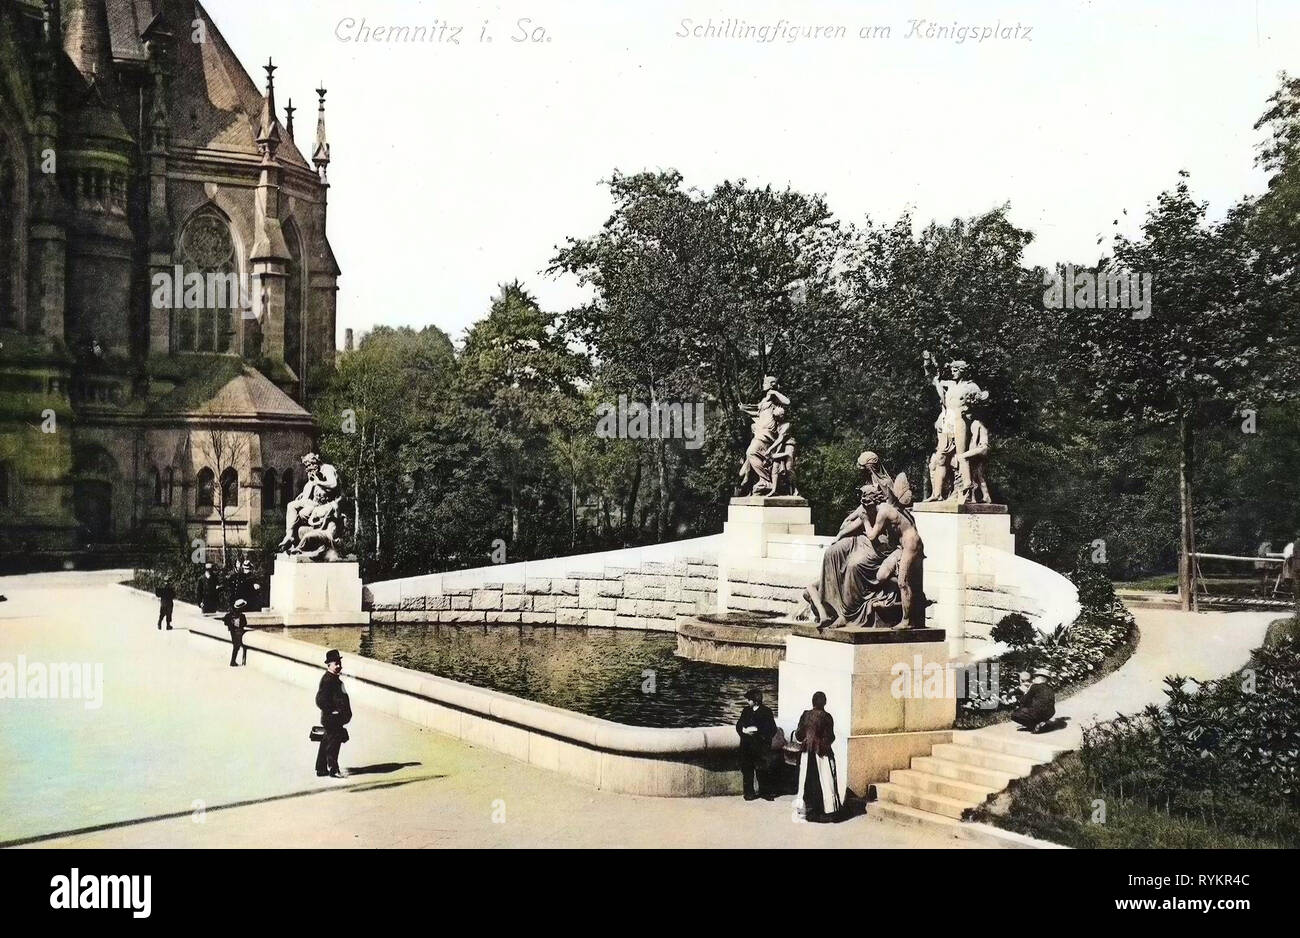 Vier Tageszeiten, Sculptures in Chemnitz, Schlosskirche Chemnitz, Streets and squares in Chemnitz, 1913, Chemnitz, Schillingfiguren am Königsplatz Stock Photo